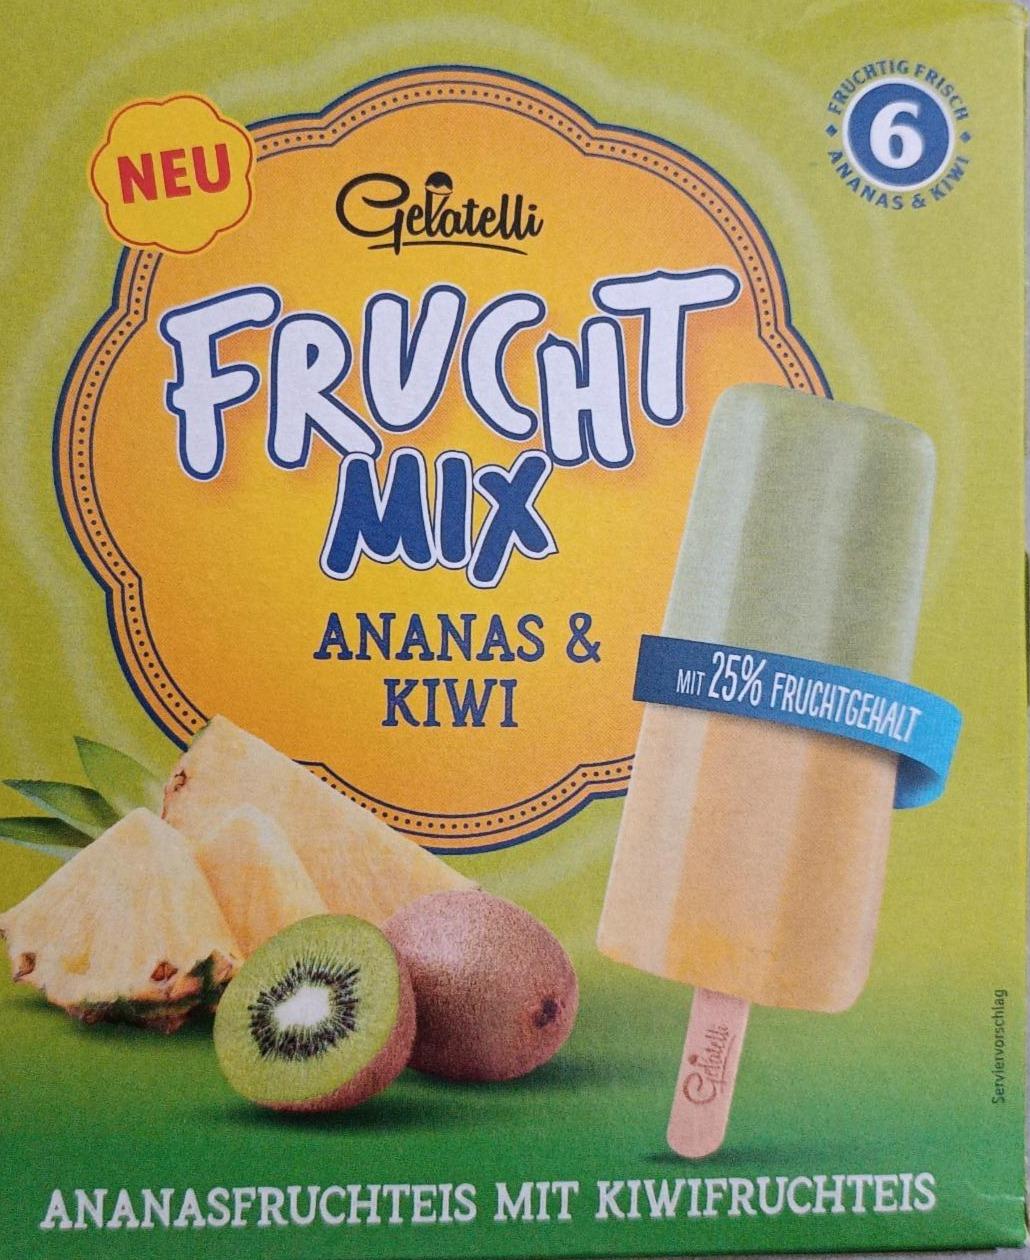 Fotografie - Frucht mix Ananas & Kiwi Gelatelli